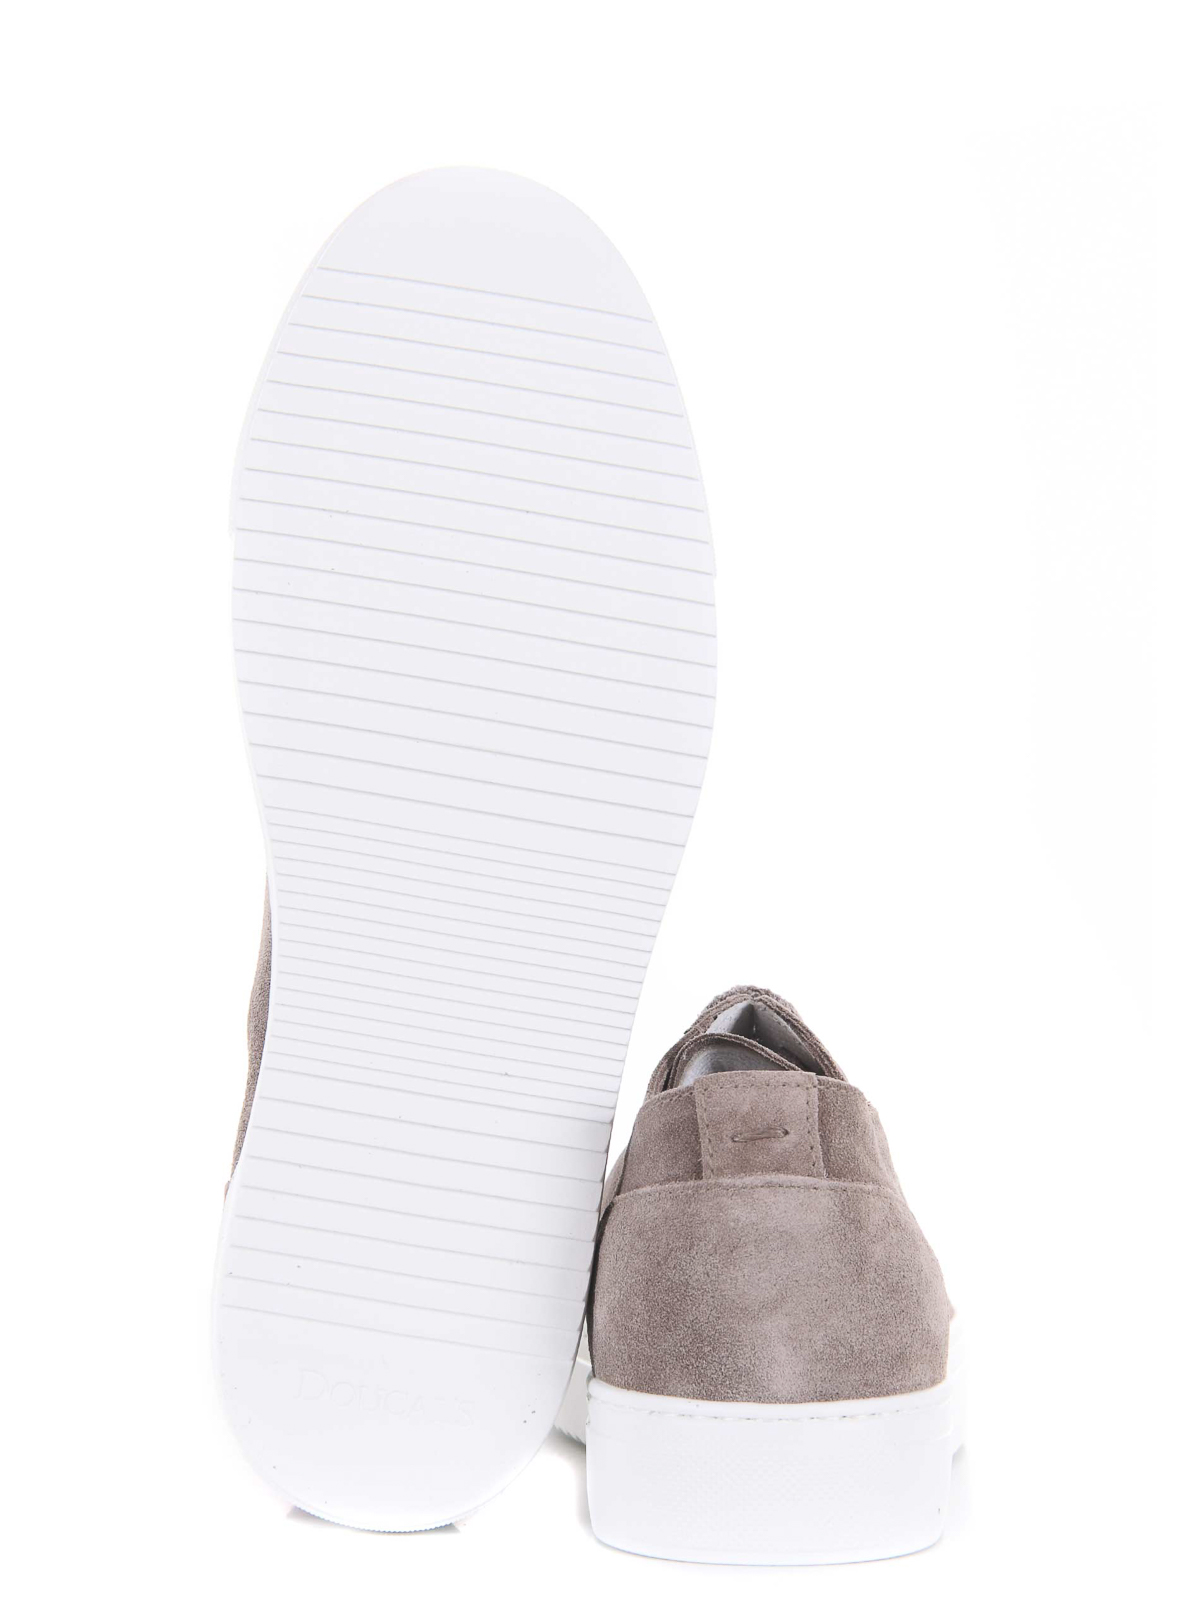 Shop Doucal's Doucals Mens Sneakers In Grey